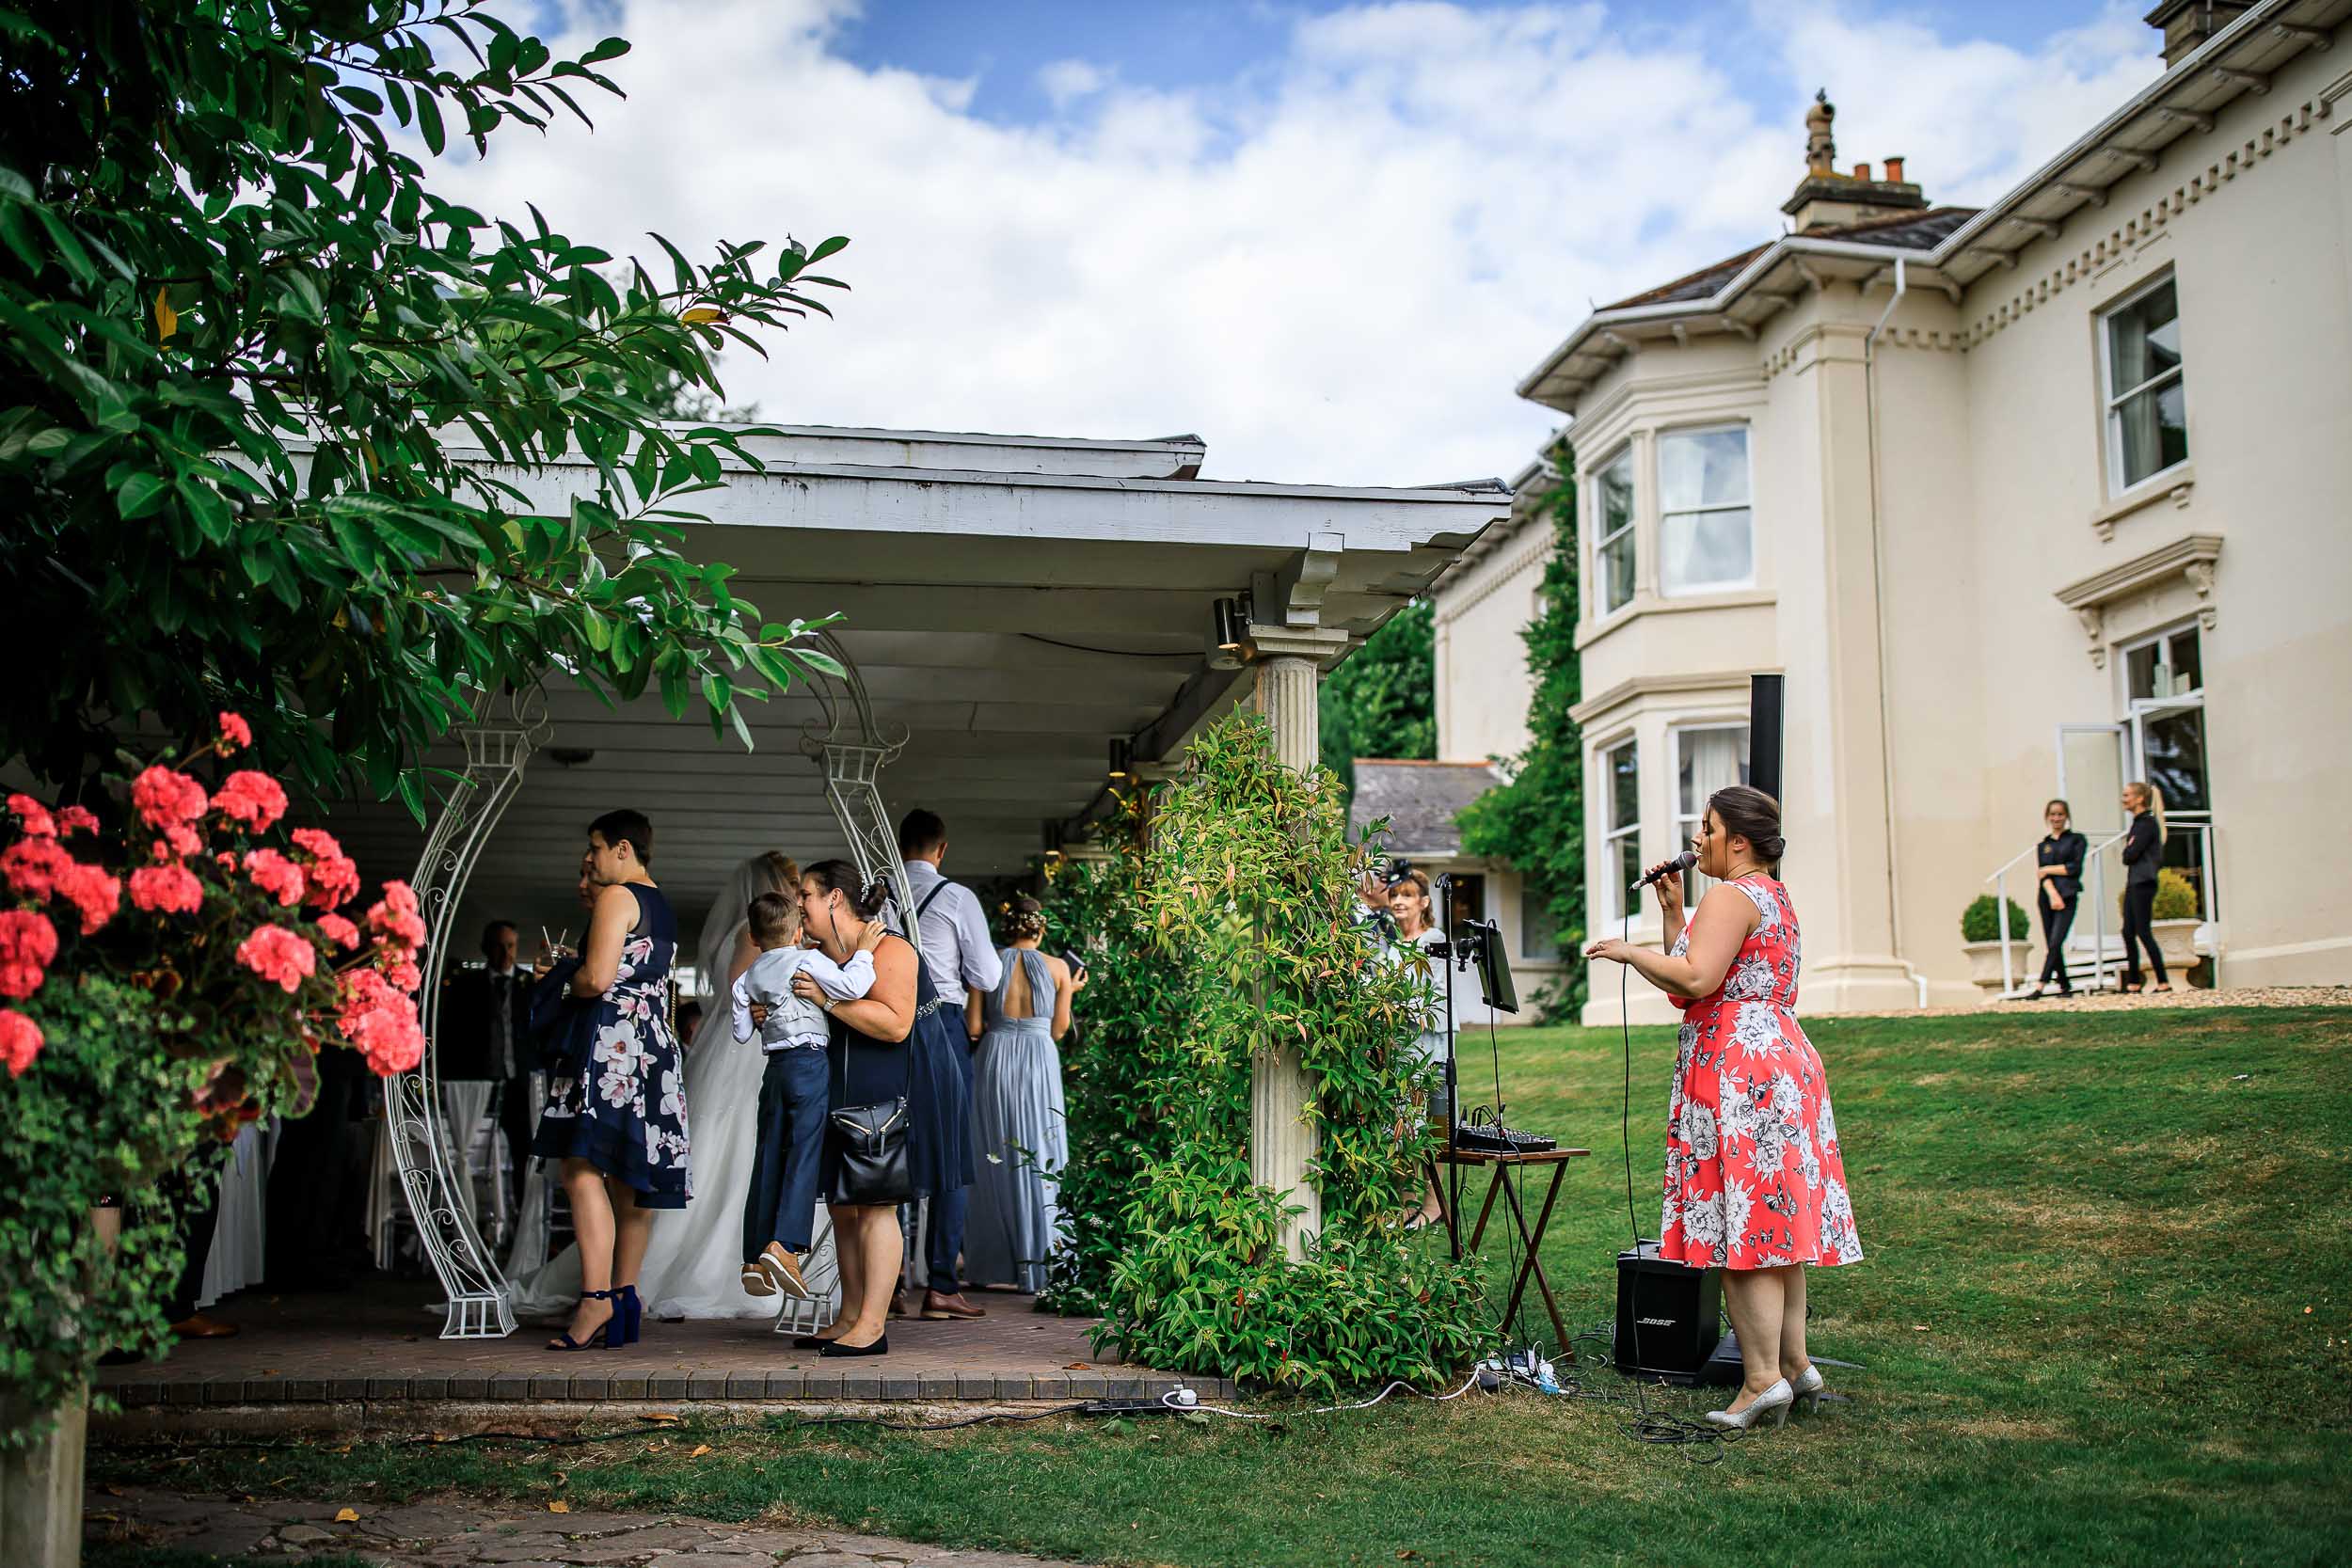 Munstone, House, Herefordshire, Wedding, Weddings, Wedding Photographers, Munstone House wedding photographer, Herefordshire wedding photographer,